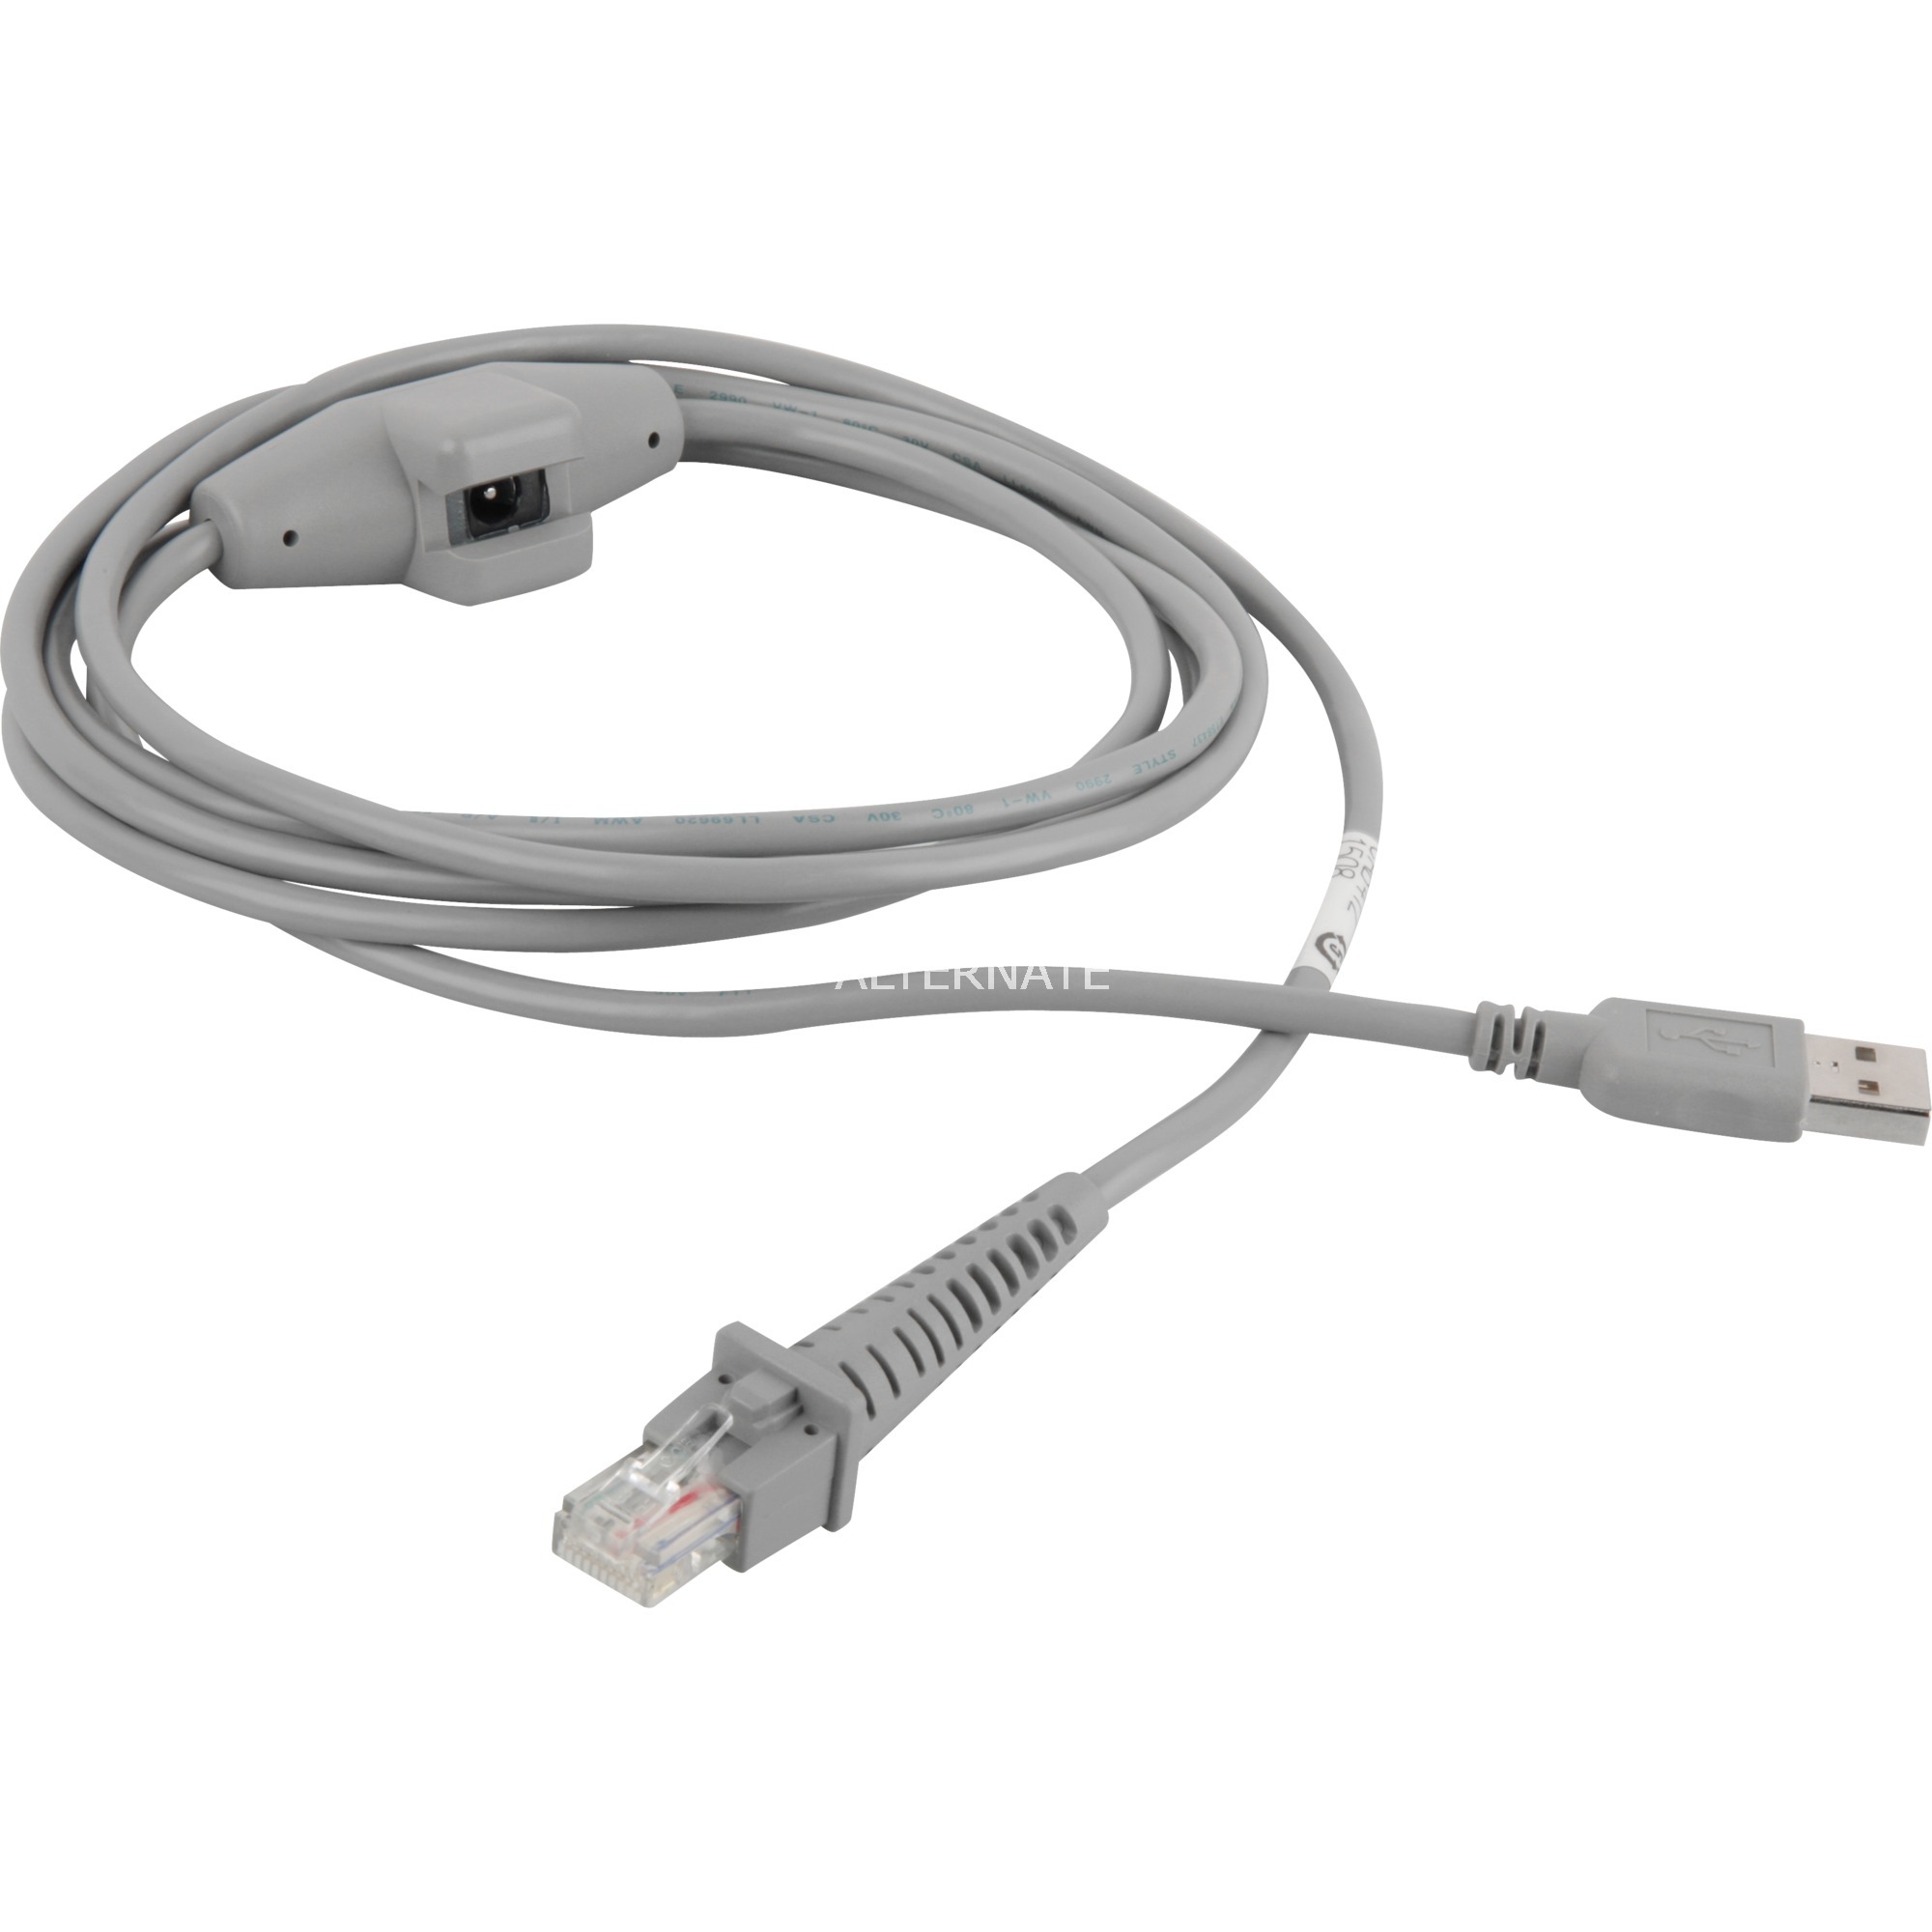 Image of Alternate - CAB-412 USB, Kabel online einkaufen bei Alternate